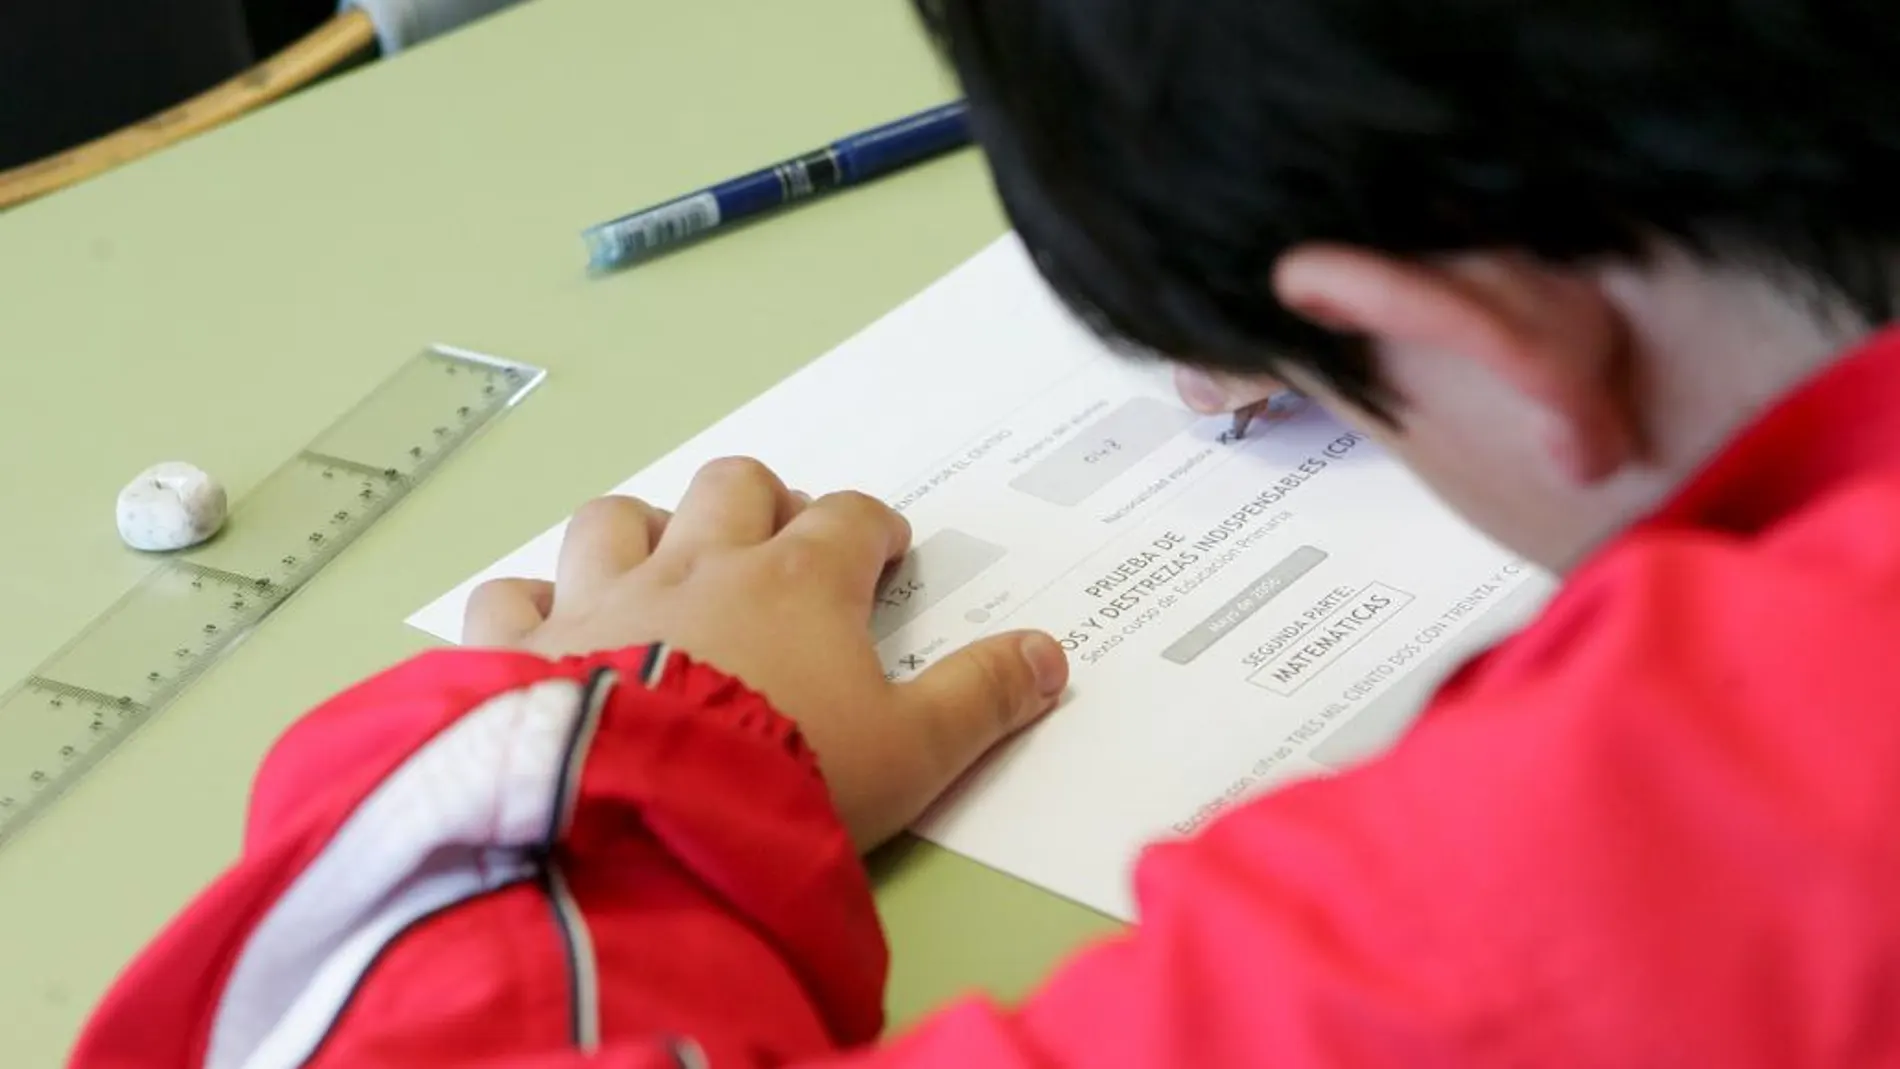 El PSOE quiere limitar los deberes escolares si gobierna